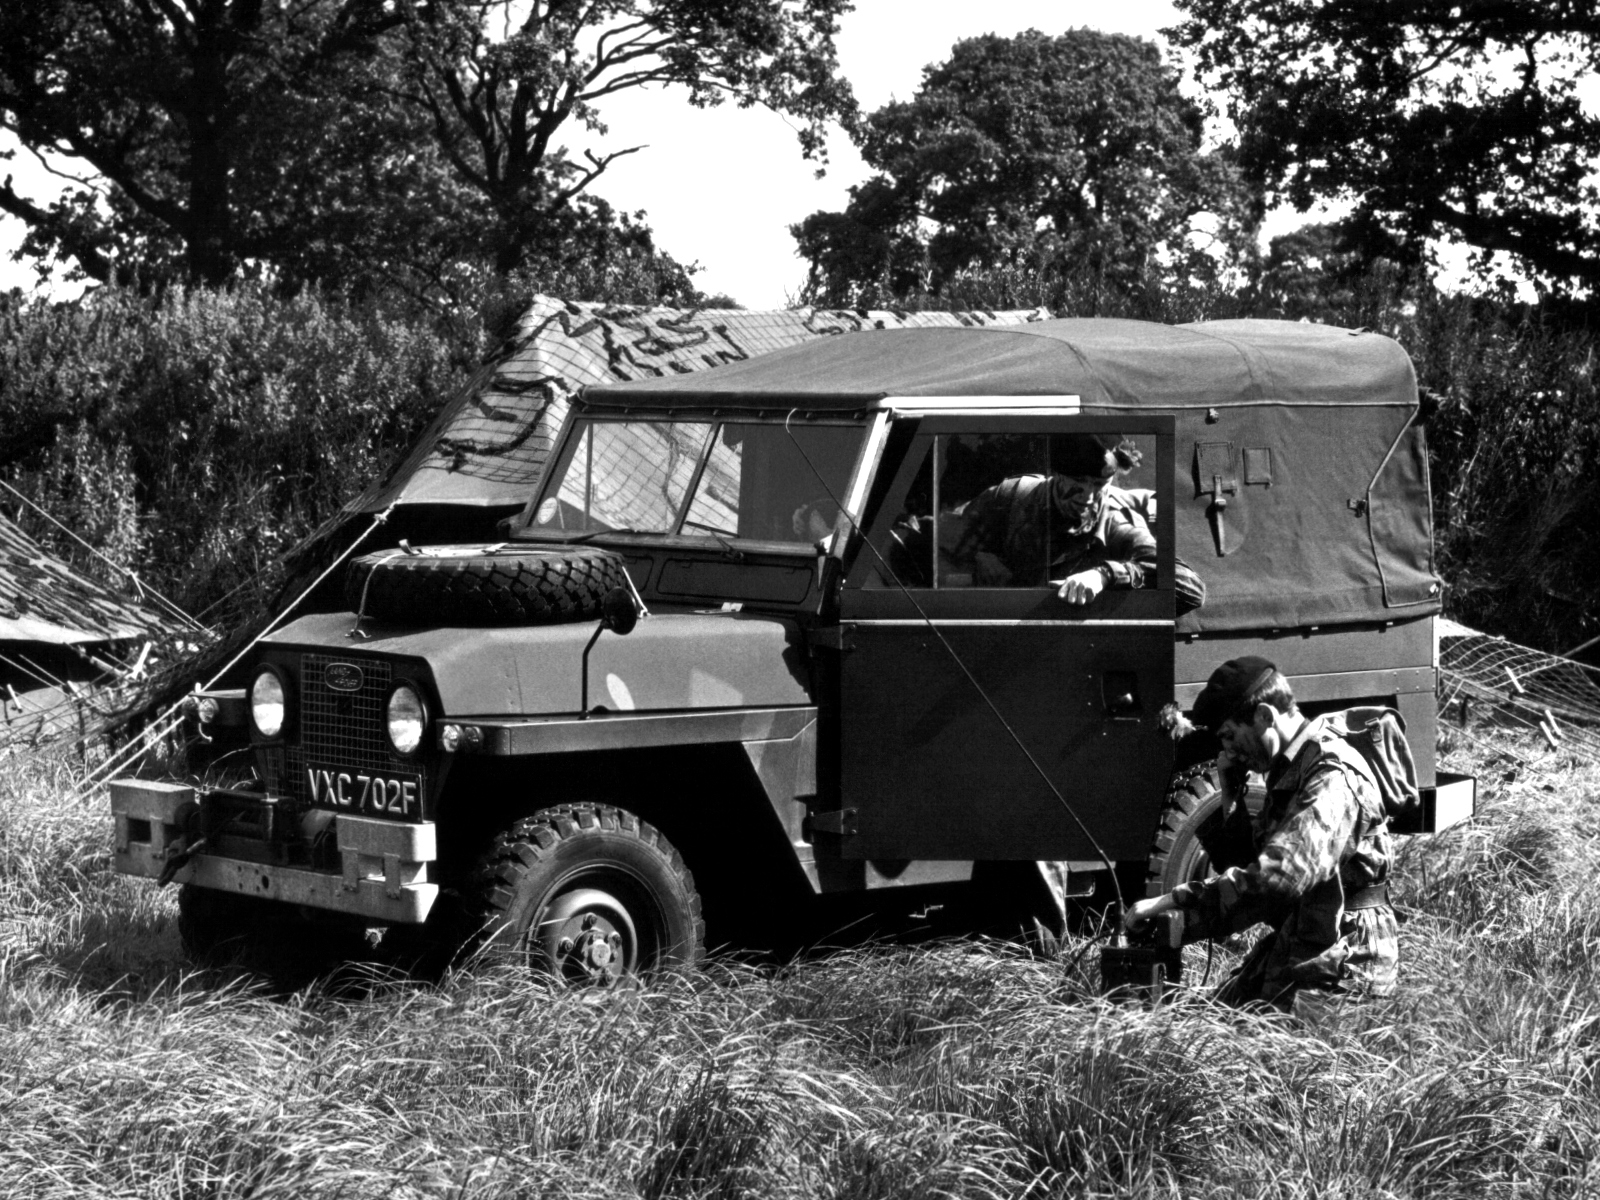 1968, Land, Rover, Lightweight, Iia, 4x4, Offroad, Military, Truck, Trucks, Classic, B w Wallpaper